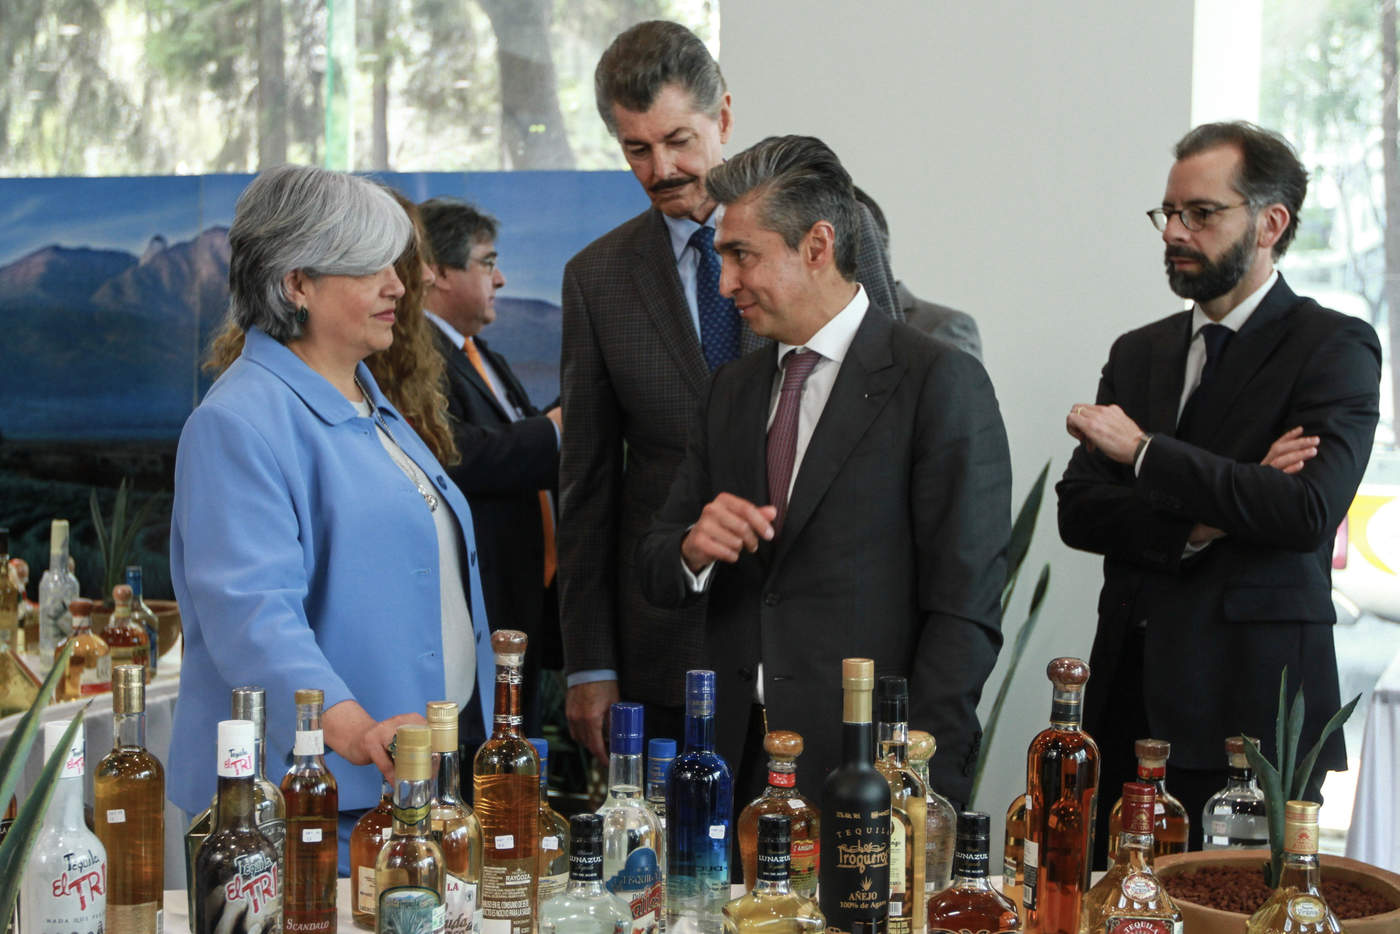 Con su reconocimiento, Brasil se sumó a los países donde la denominación de origen del tequila mexicano se encuentra protegida, después de un proceso de 11 años de análisis, trabajos técnicos y negociaciones, apuntaron. (NOTIMEX)